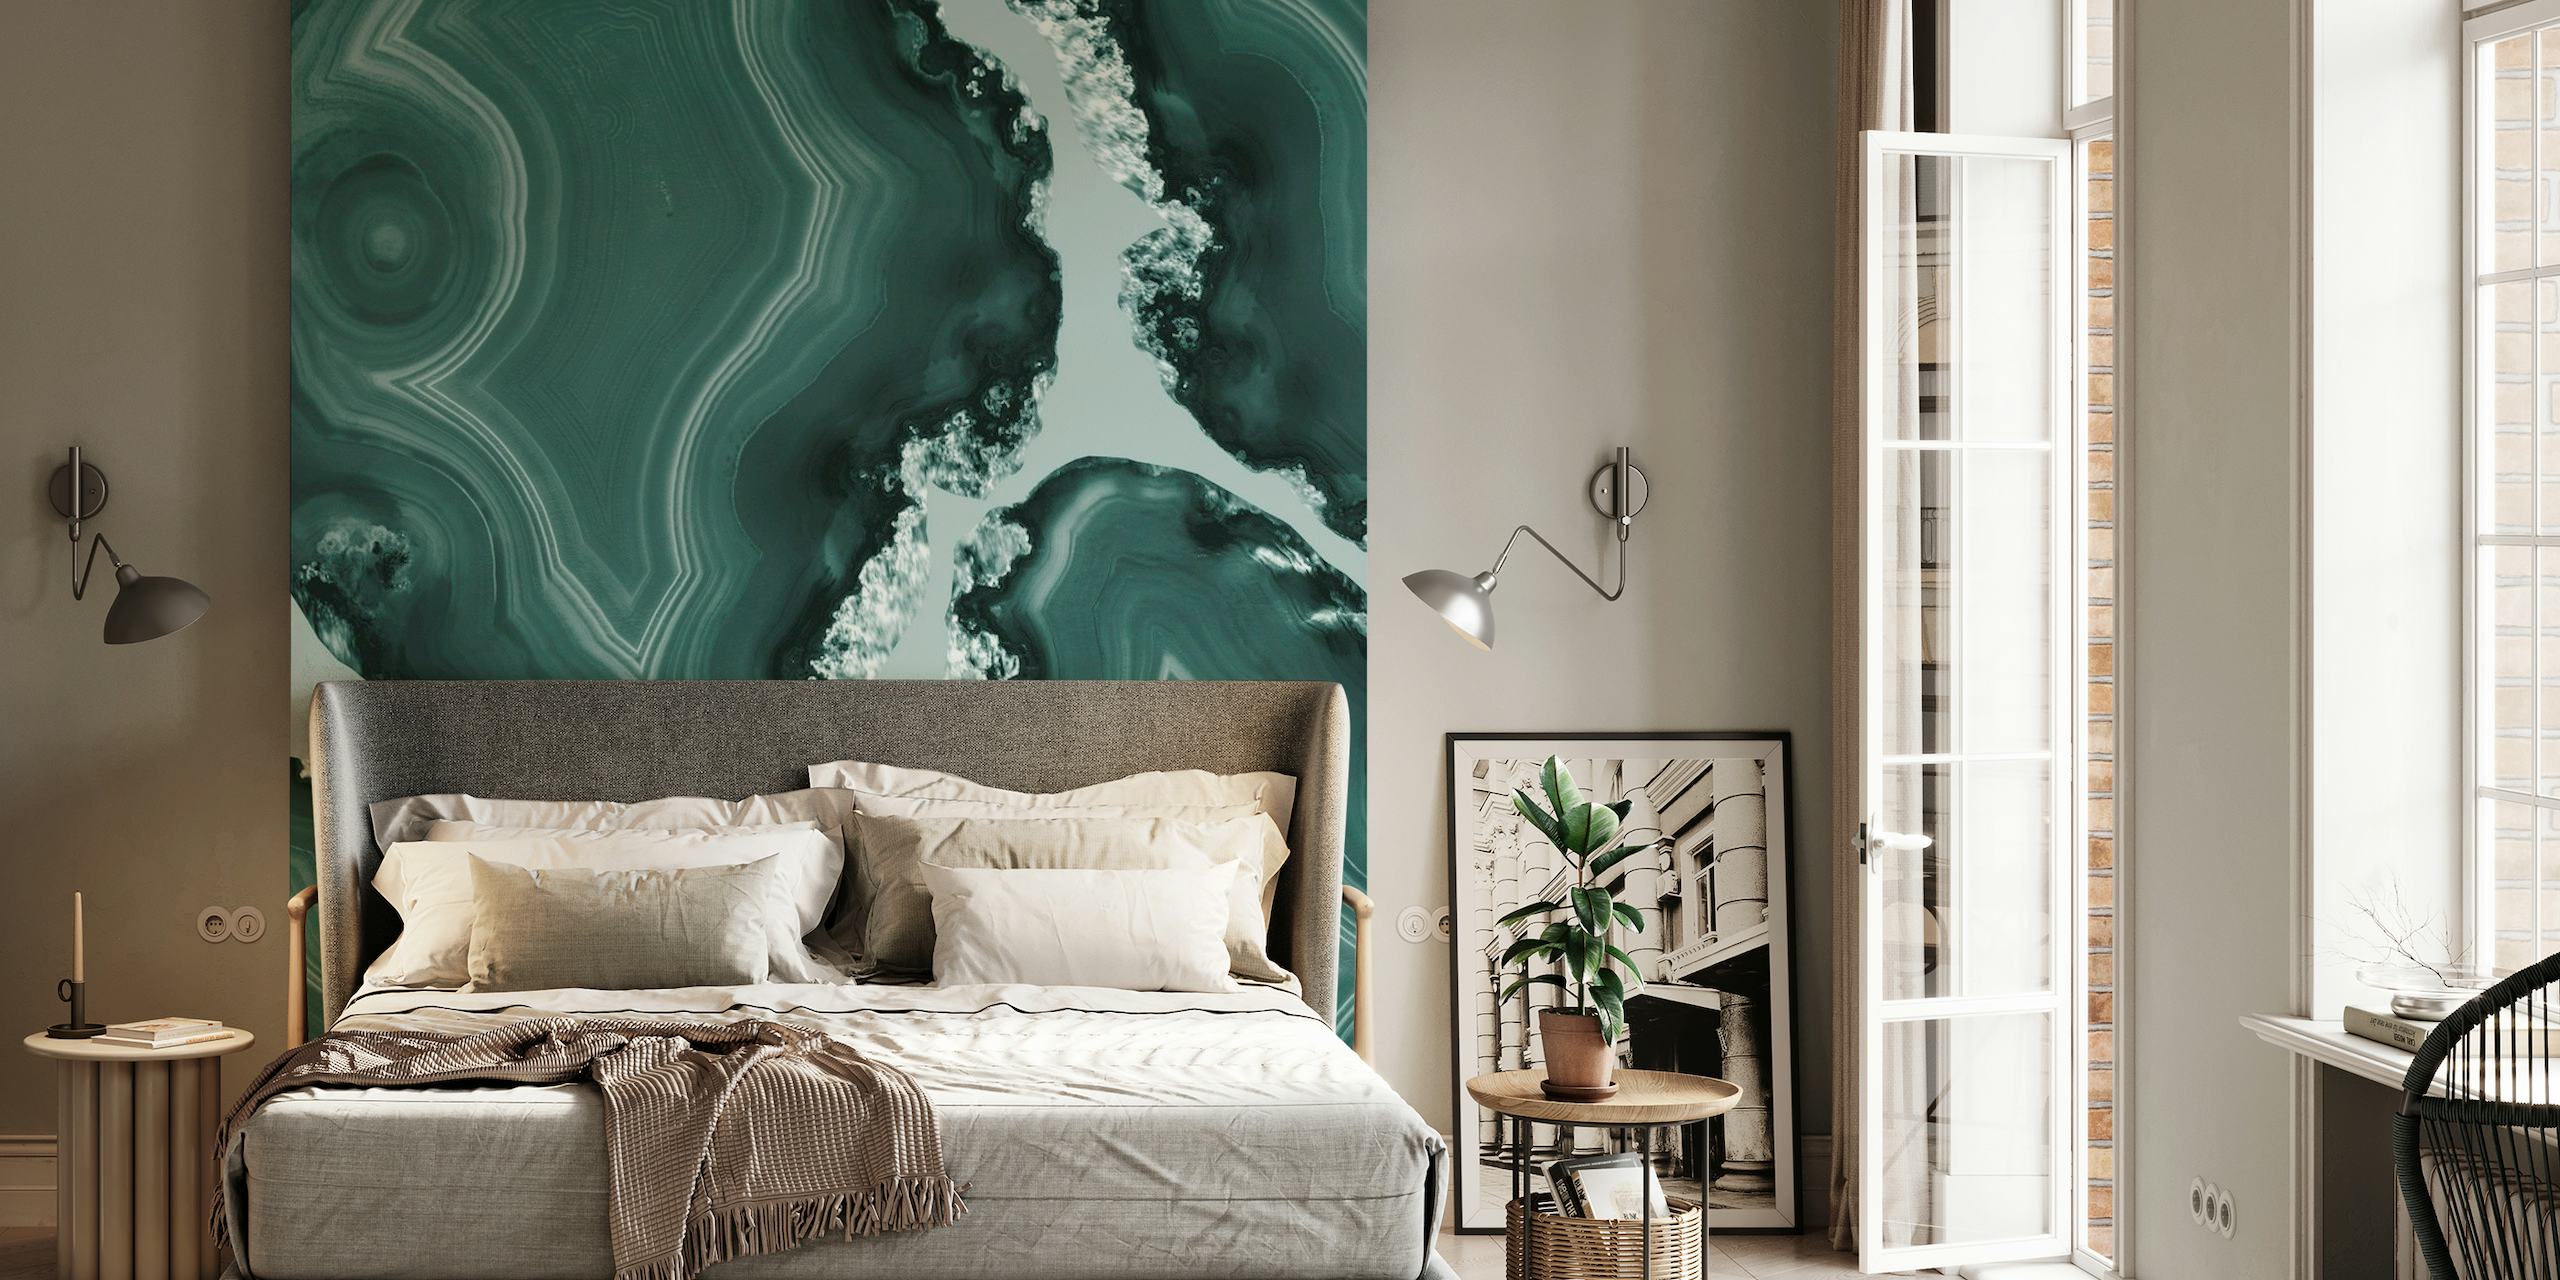 Sinivihreakaattikuvioinen seinämaalaus, jossa on sinivihreitä ja luonnonkiveä muistuttavia akvamariinin pyörteitä